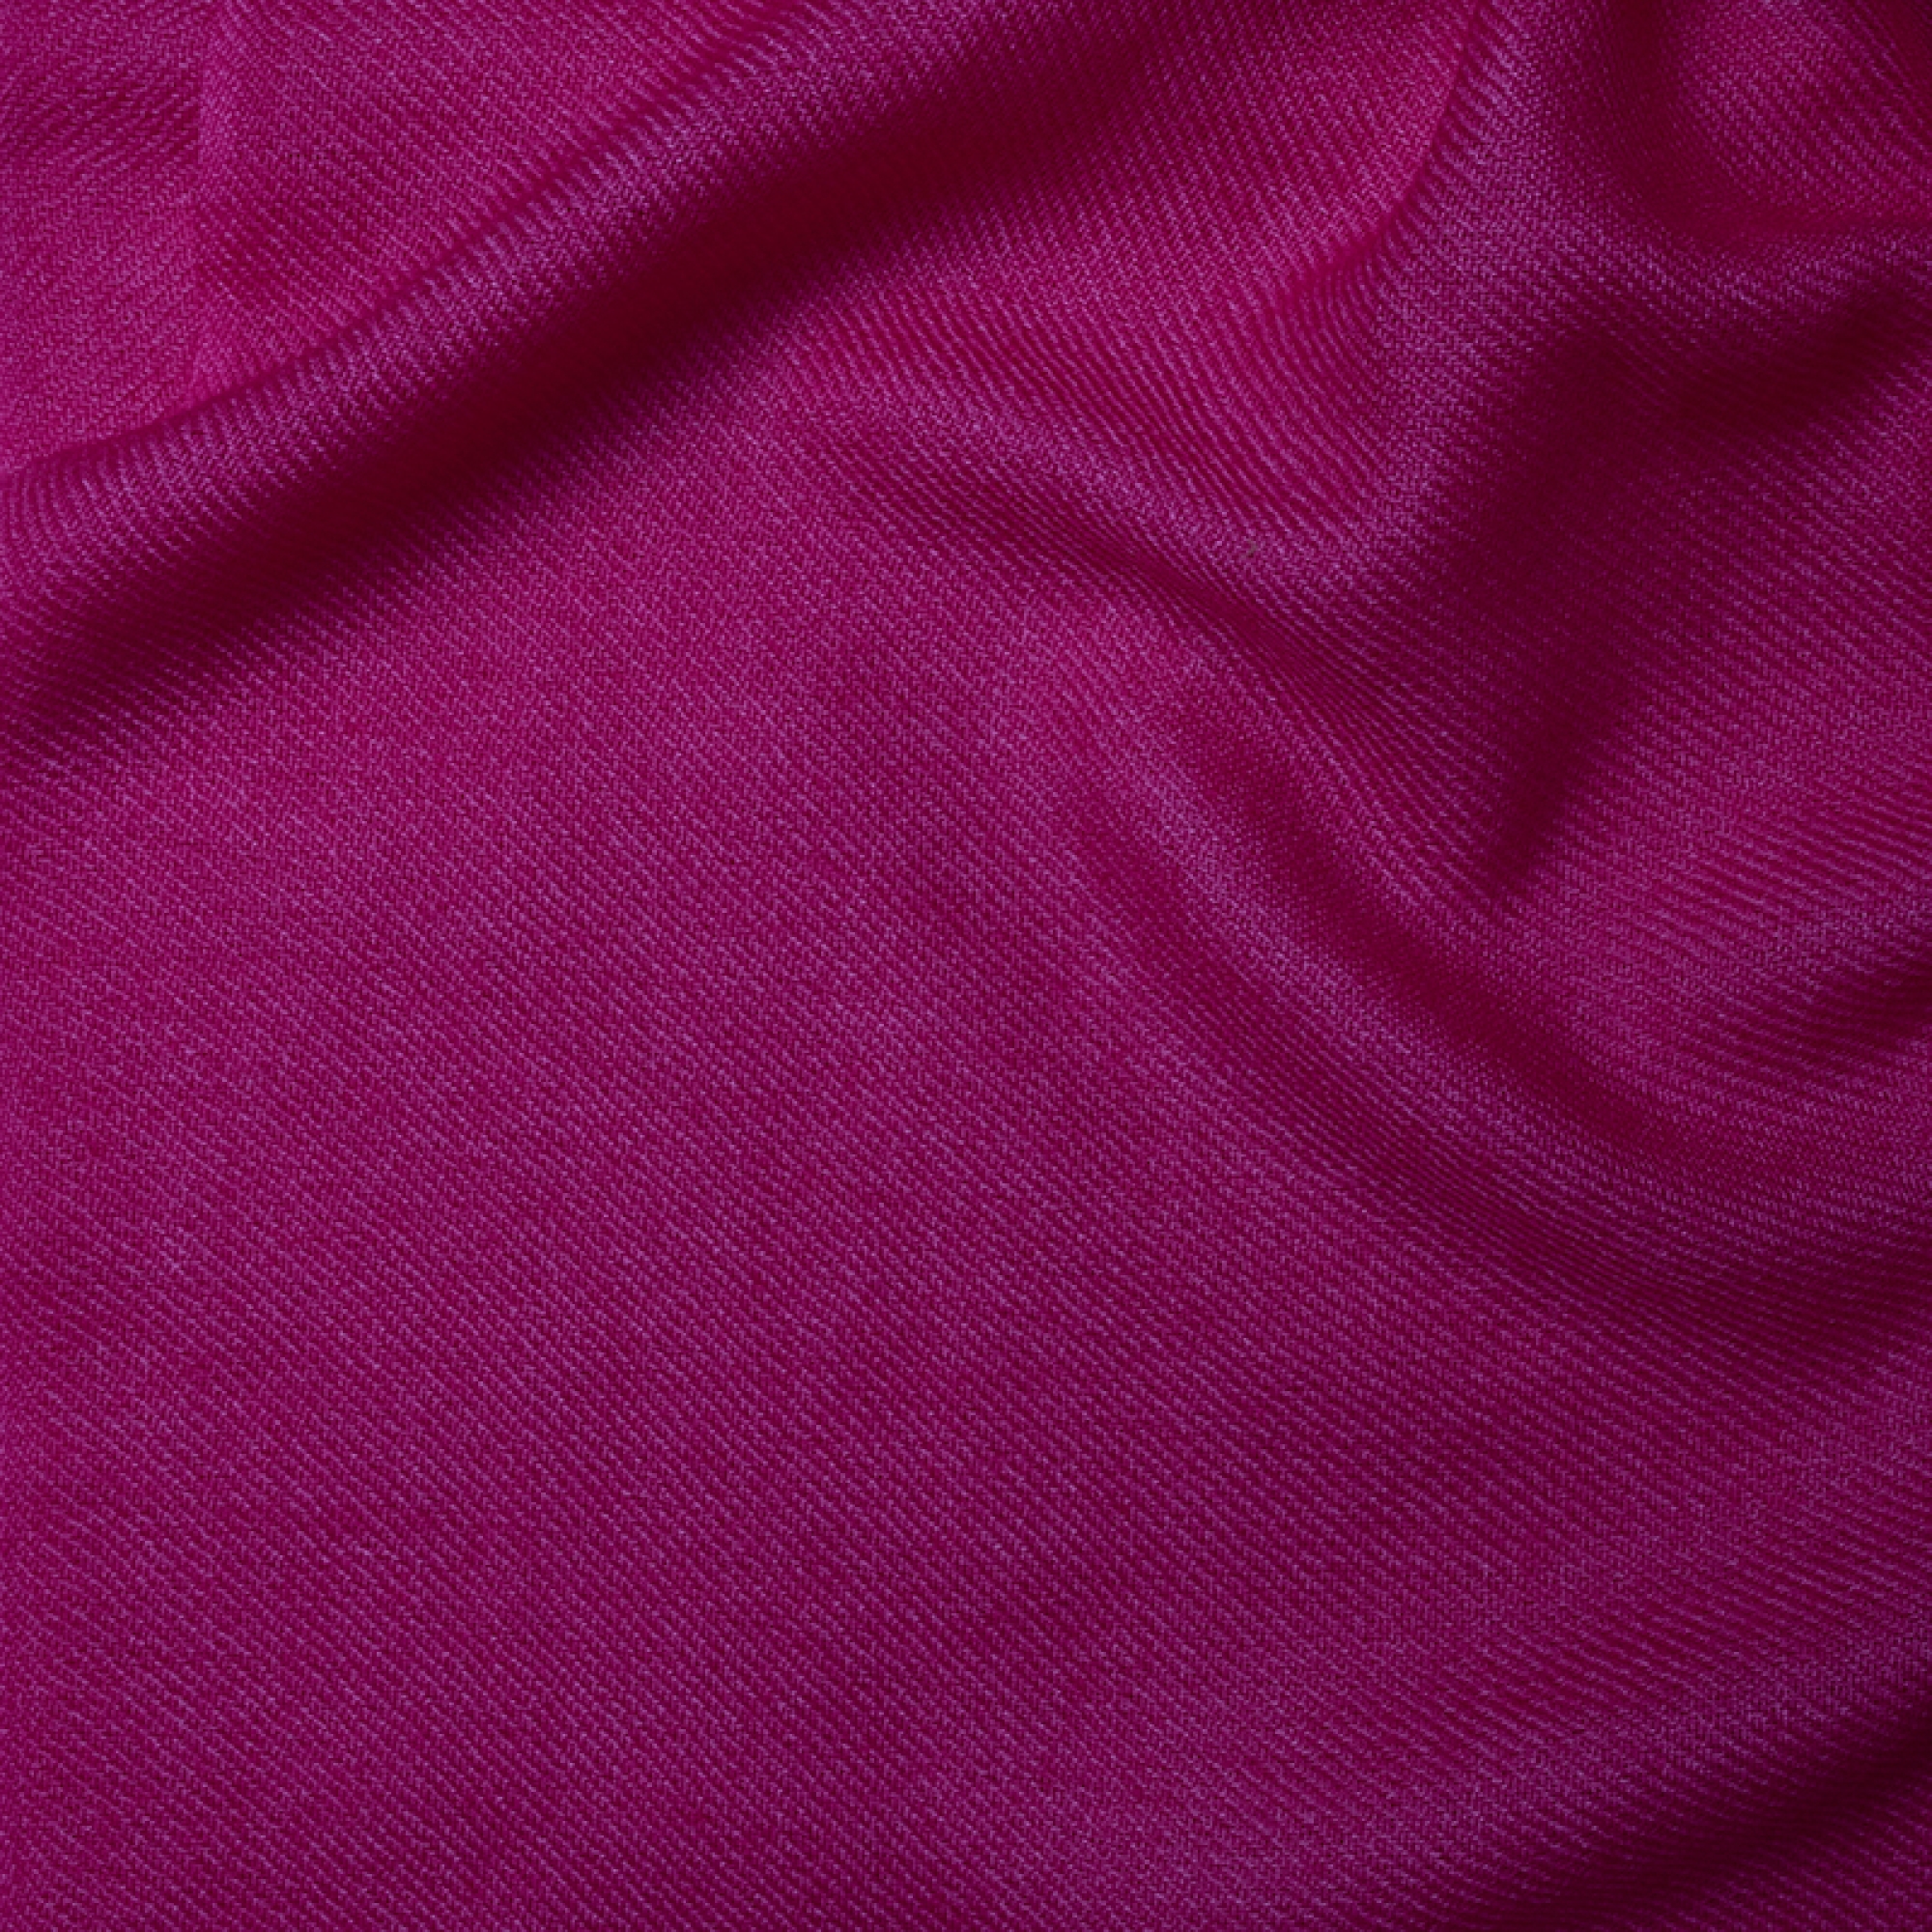 Cachemire accessoires couvertures plaids frisbi 147 x 203 rose flamboyant 147 x 203 cm